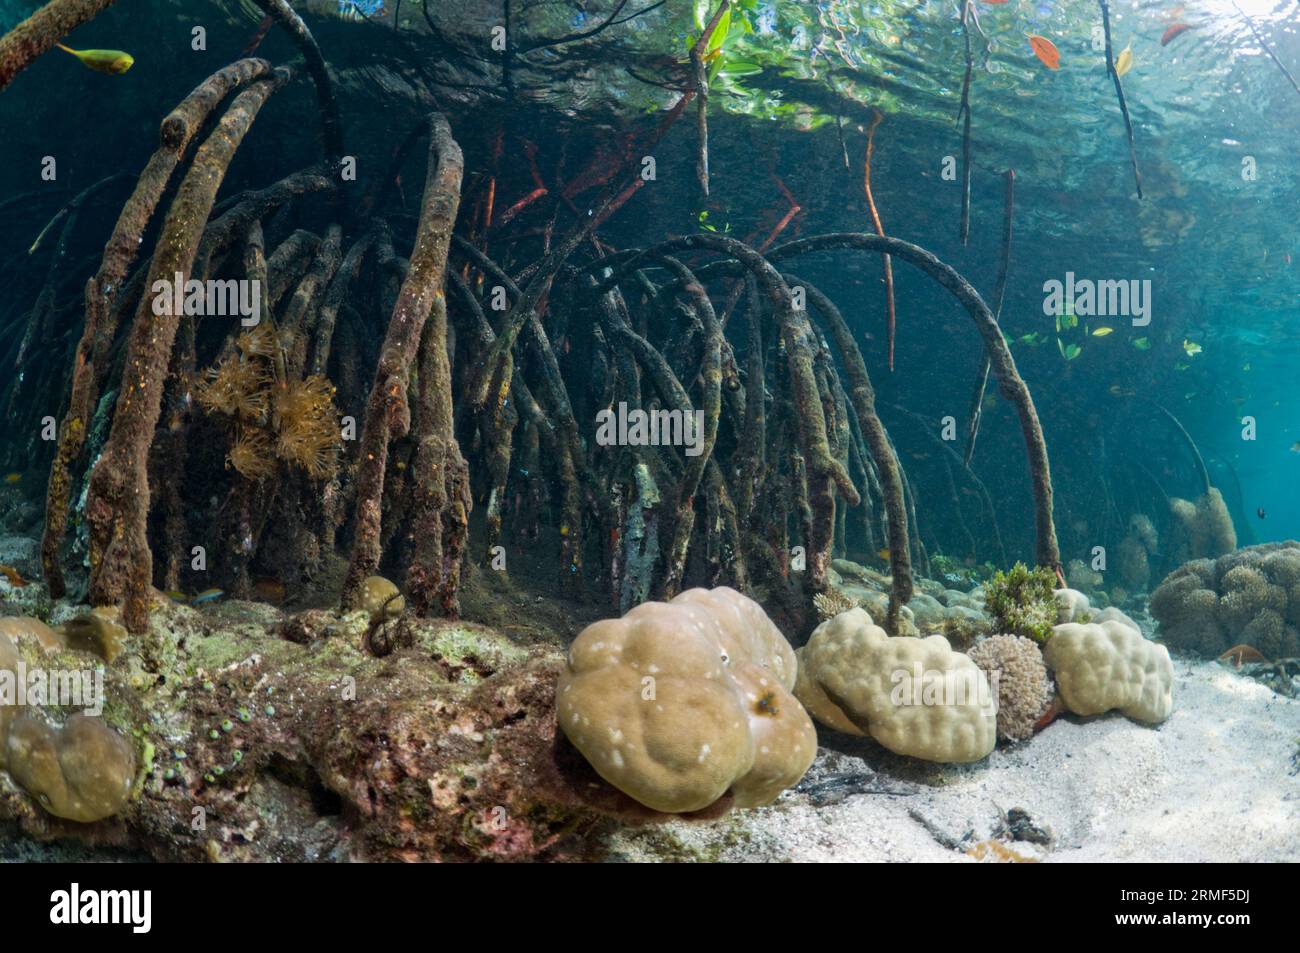 Mangrovenwurzeln (Rhizophora sp.) Am Rande des Korallenriffs. Wirbellose, die unter und an den Wurzeln wachsen. Raja Ampat, Indonesien. Stockfoto